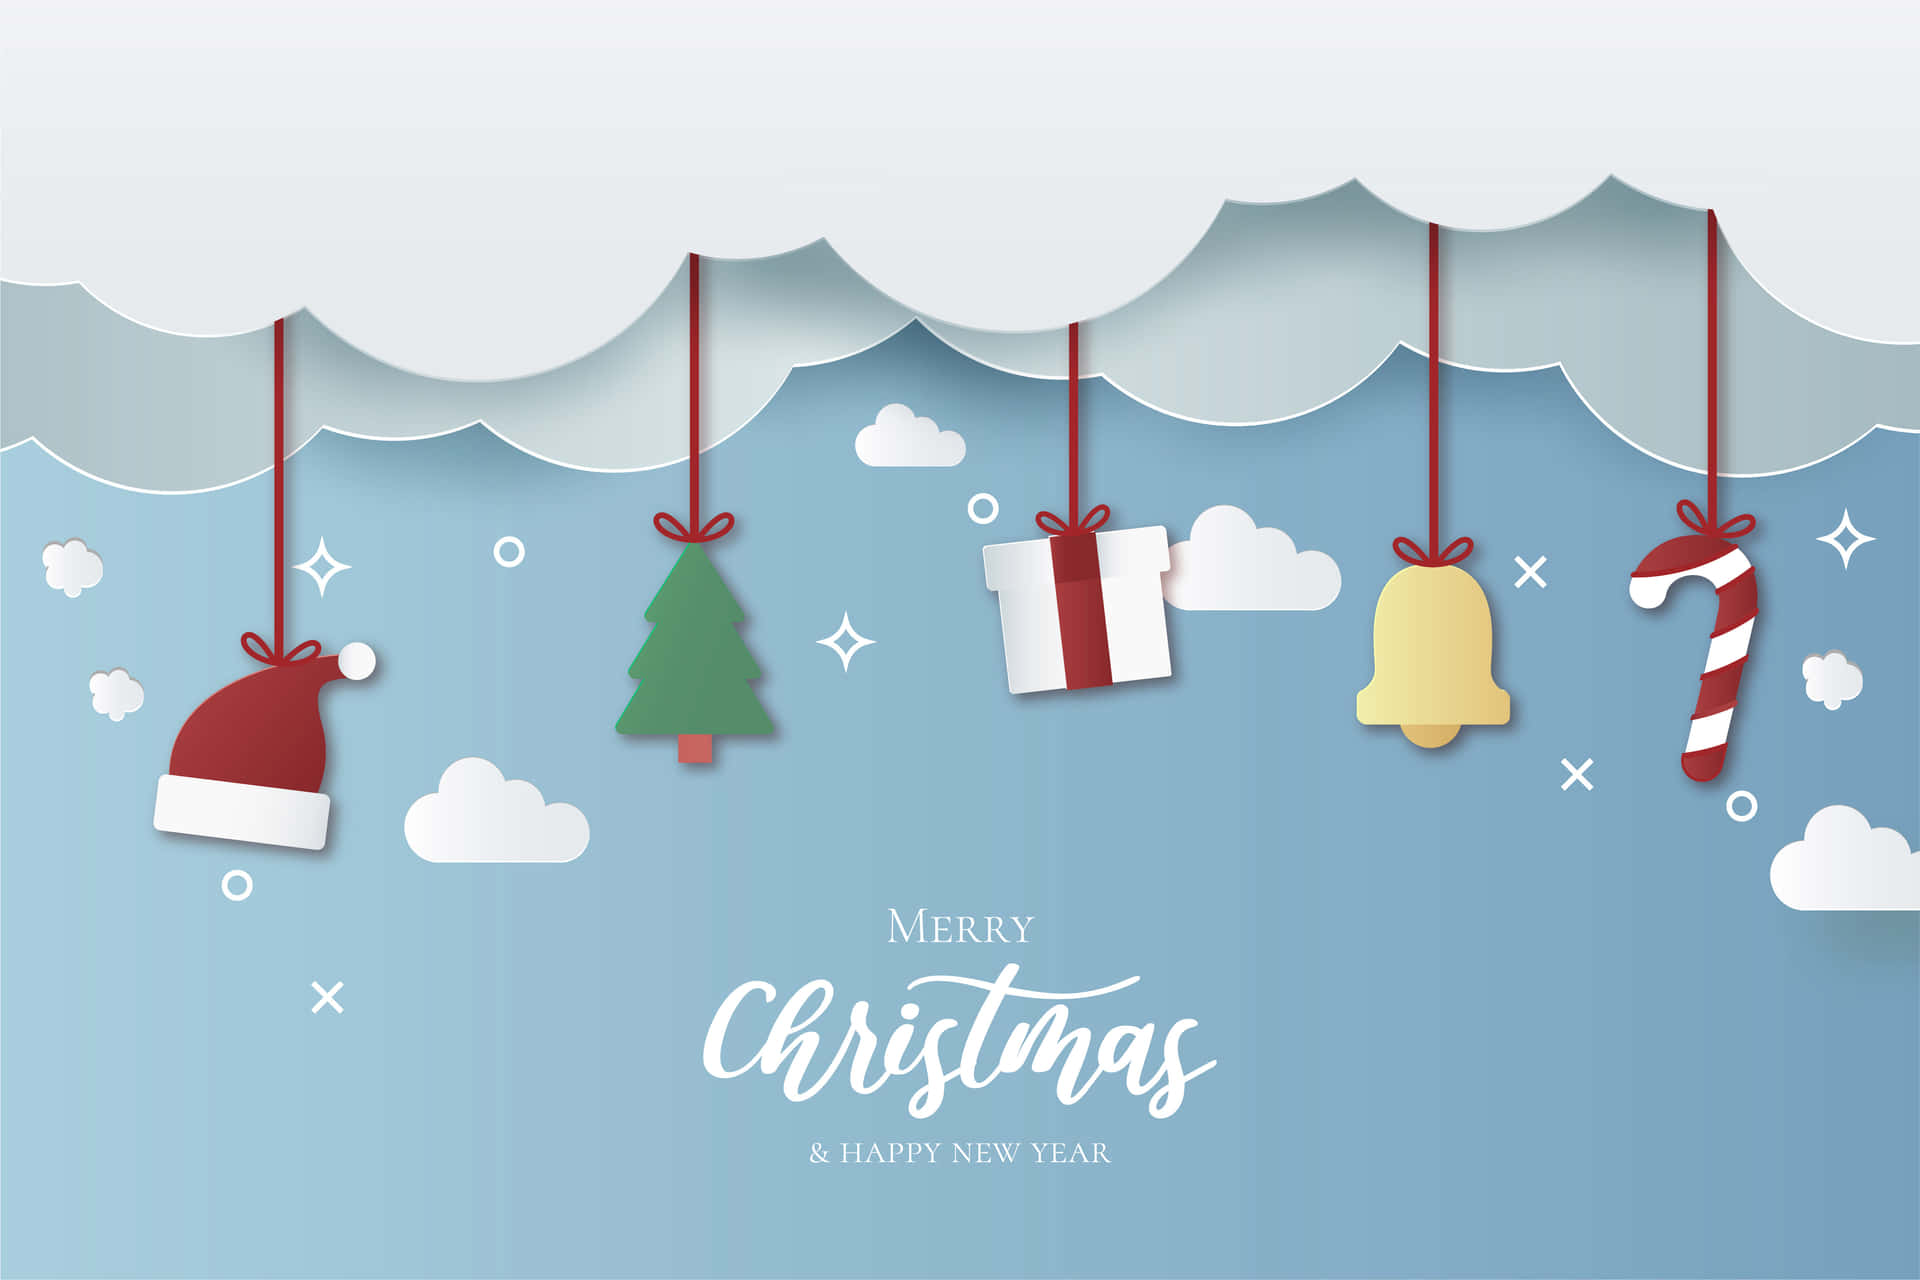 Nyd denne festlige tid med denne søde, enkle juleillustration. Wallpaper